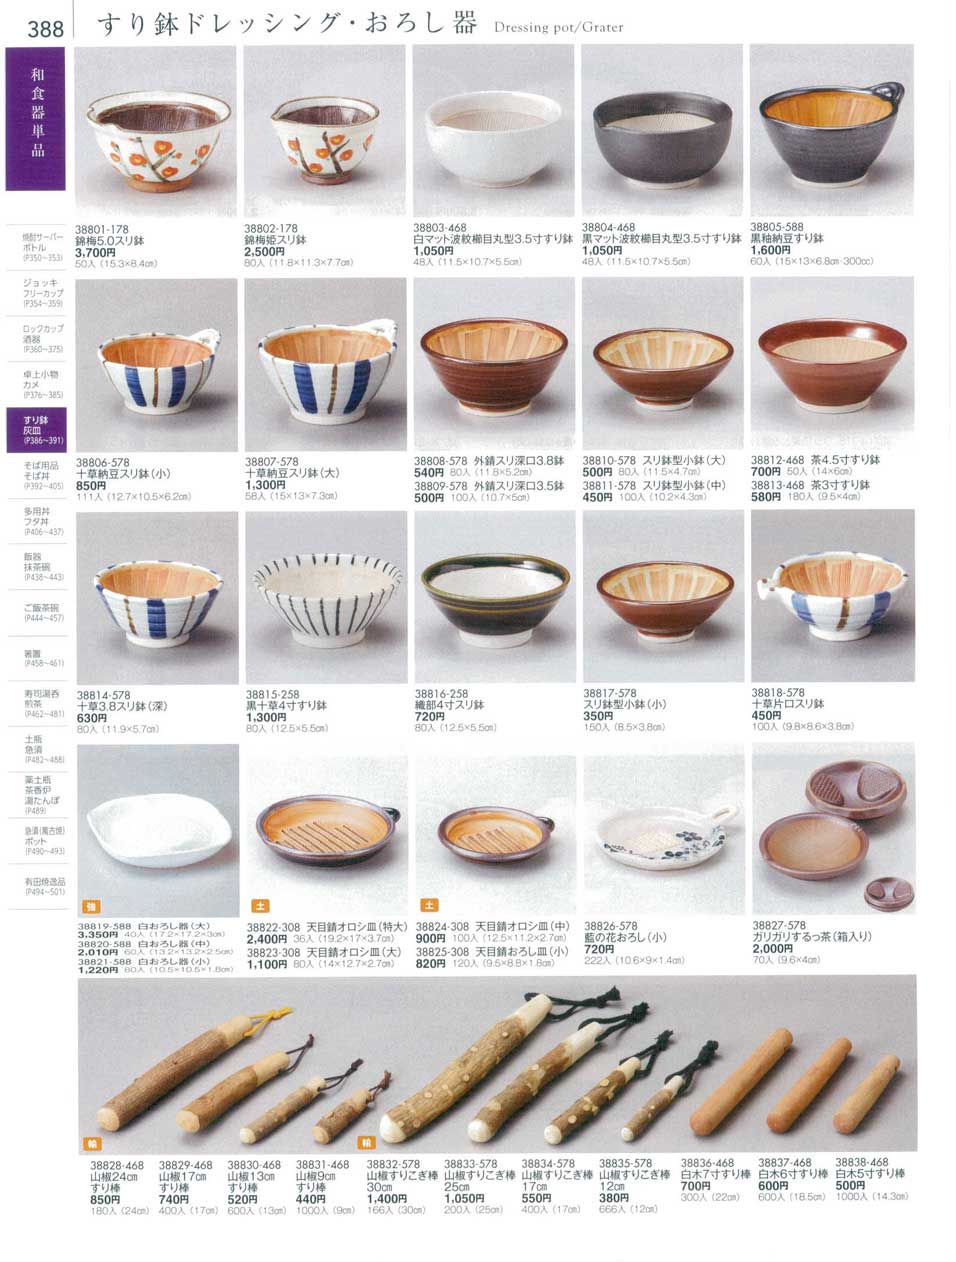 食器 すり鉢ドレッシング・おろし器Dressing pot/Grater 陶雅１８－388